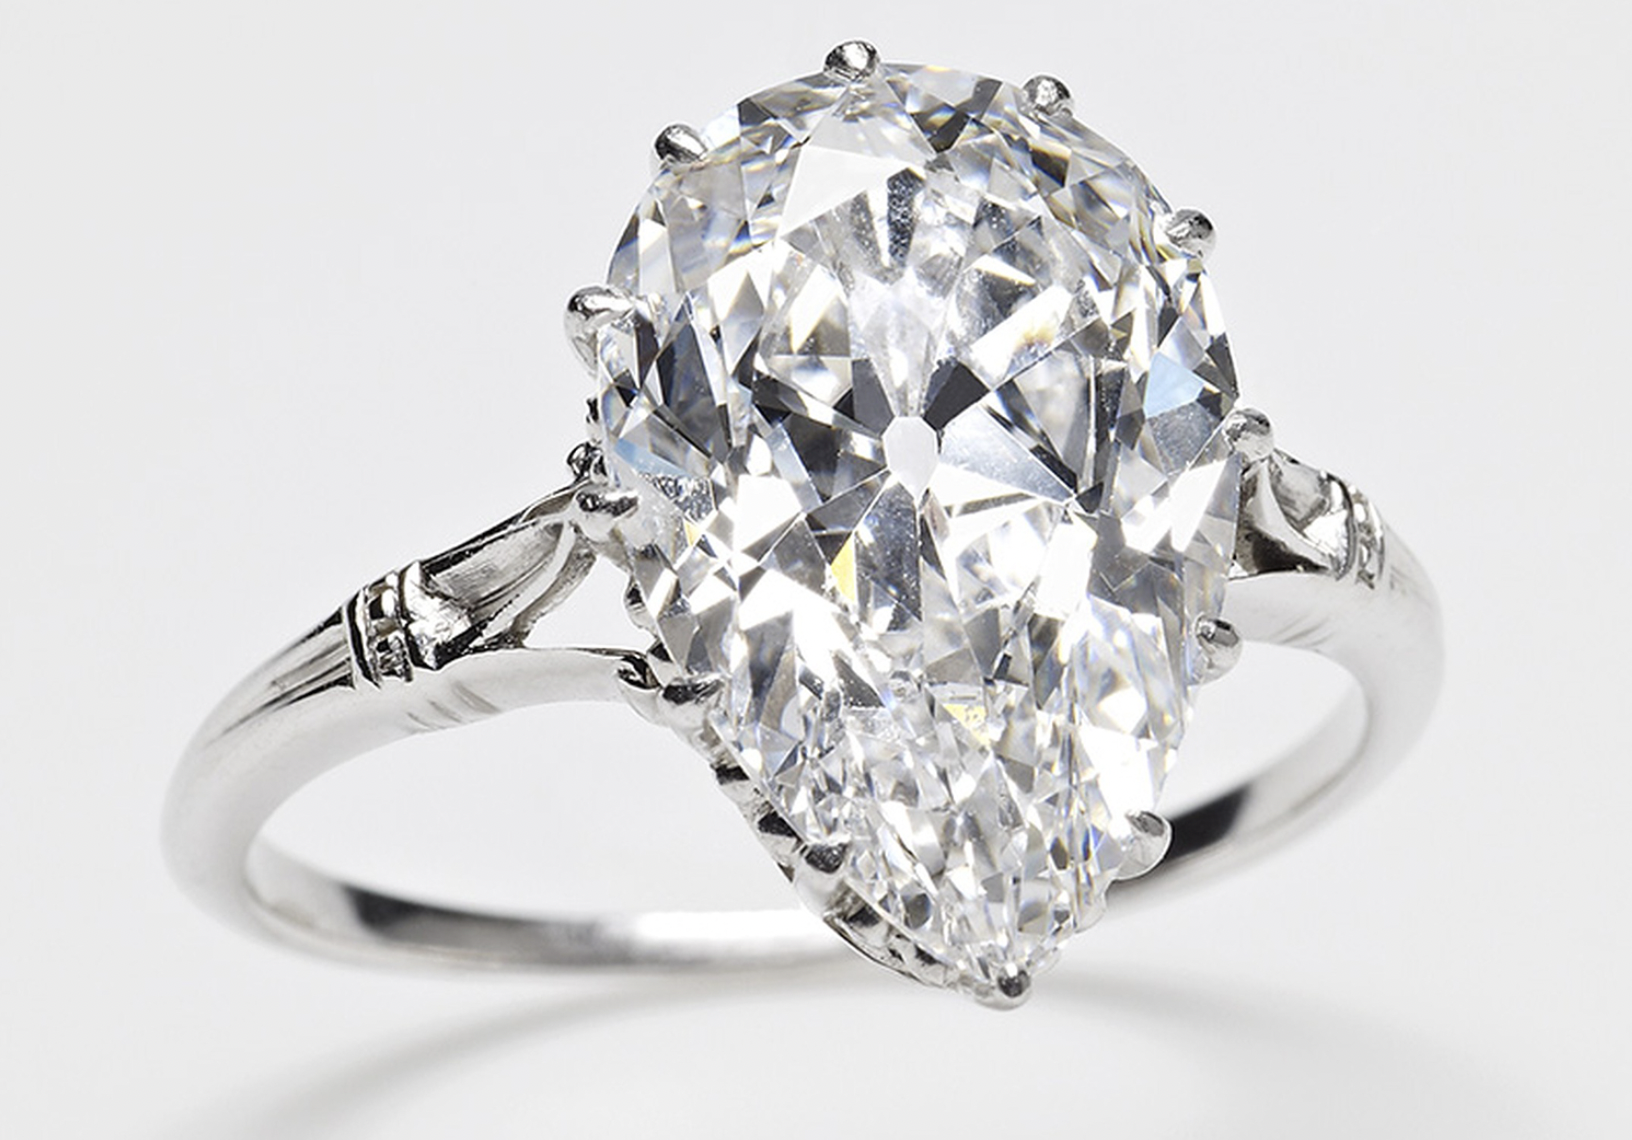 Le cullinan I un des plus gros diamant au monde il pèse 530 carats